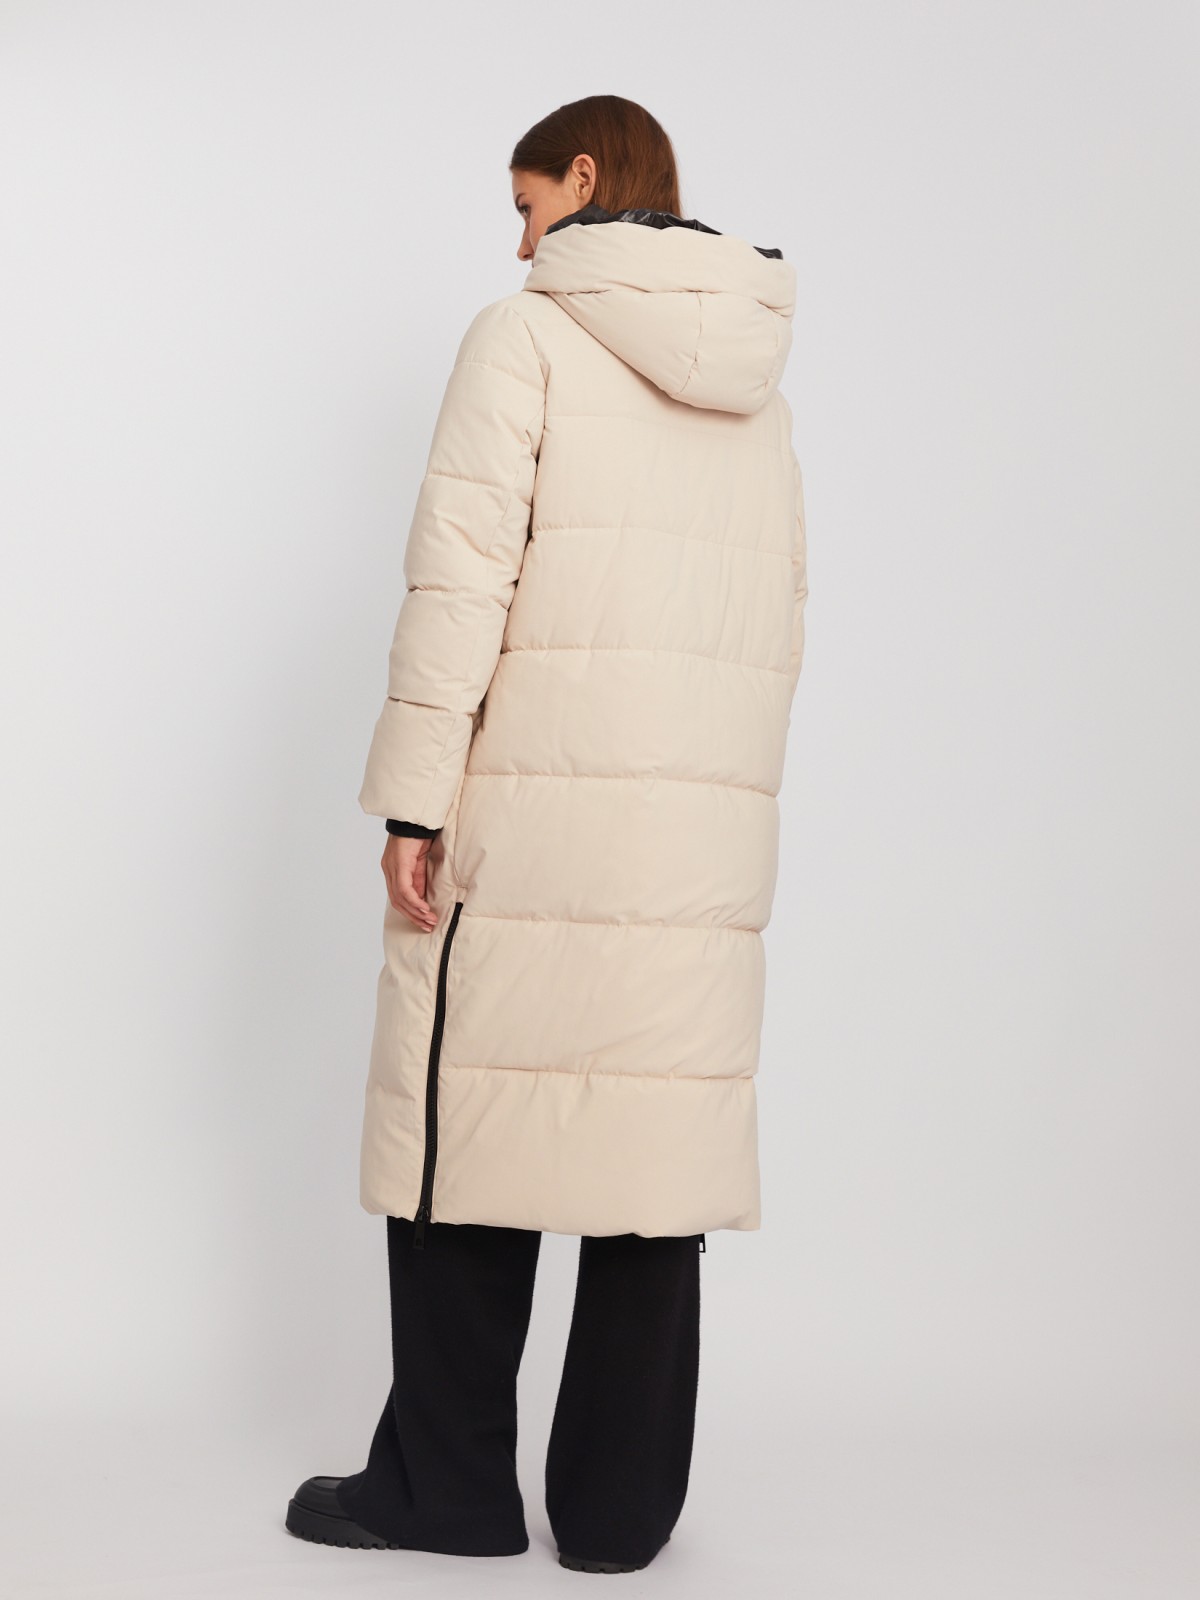 Тёплая куртка-пальто с капюшоном и боковыми шлицами на молниях